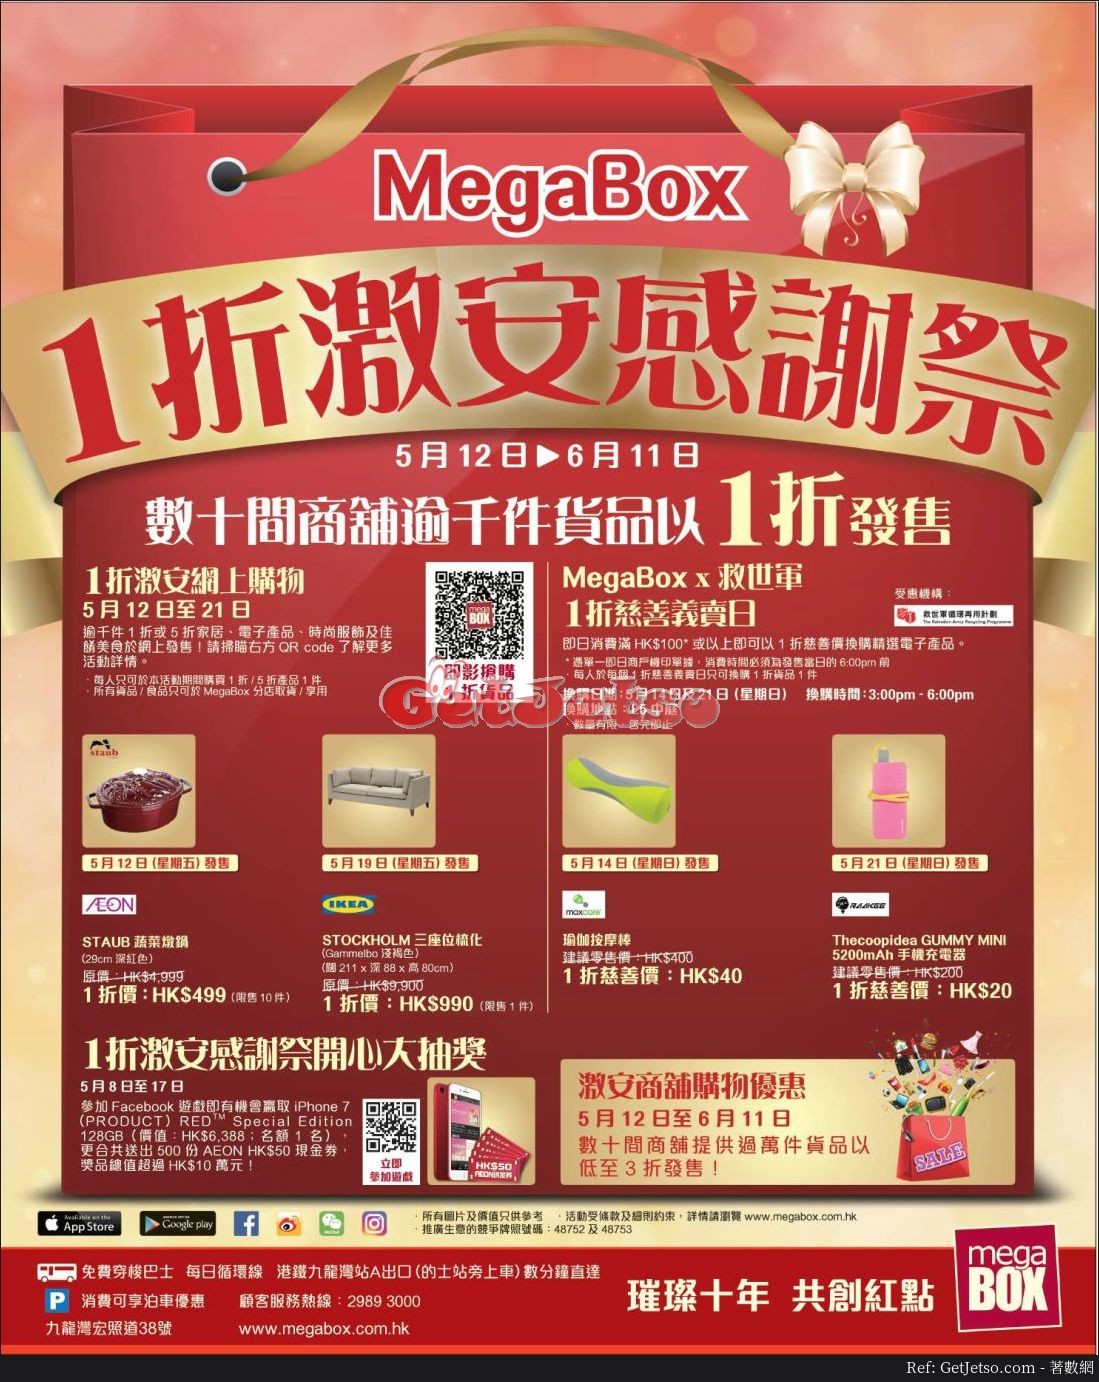 Megabox低至1折感謝祭優惠(至17年6月11日)圖片1